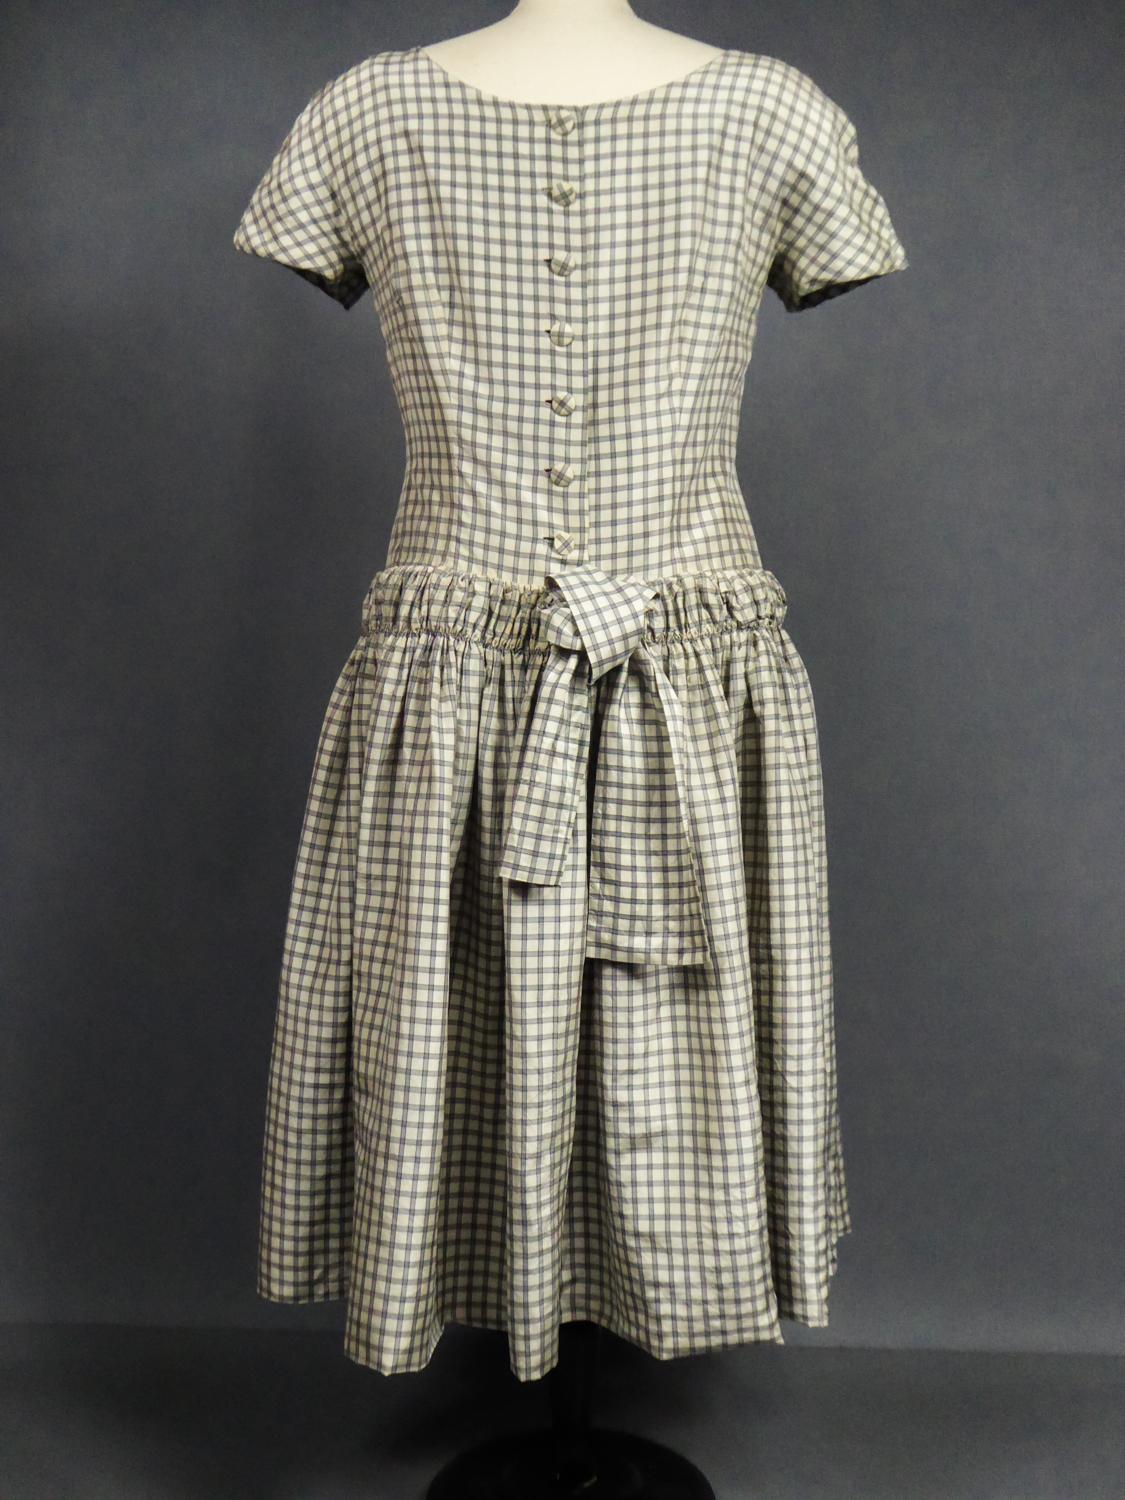 A Cristobal Balenciaga Couture Sac Dress in Plaid Taffeta n°55418 Circa 1958 4